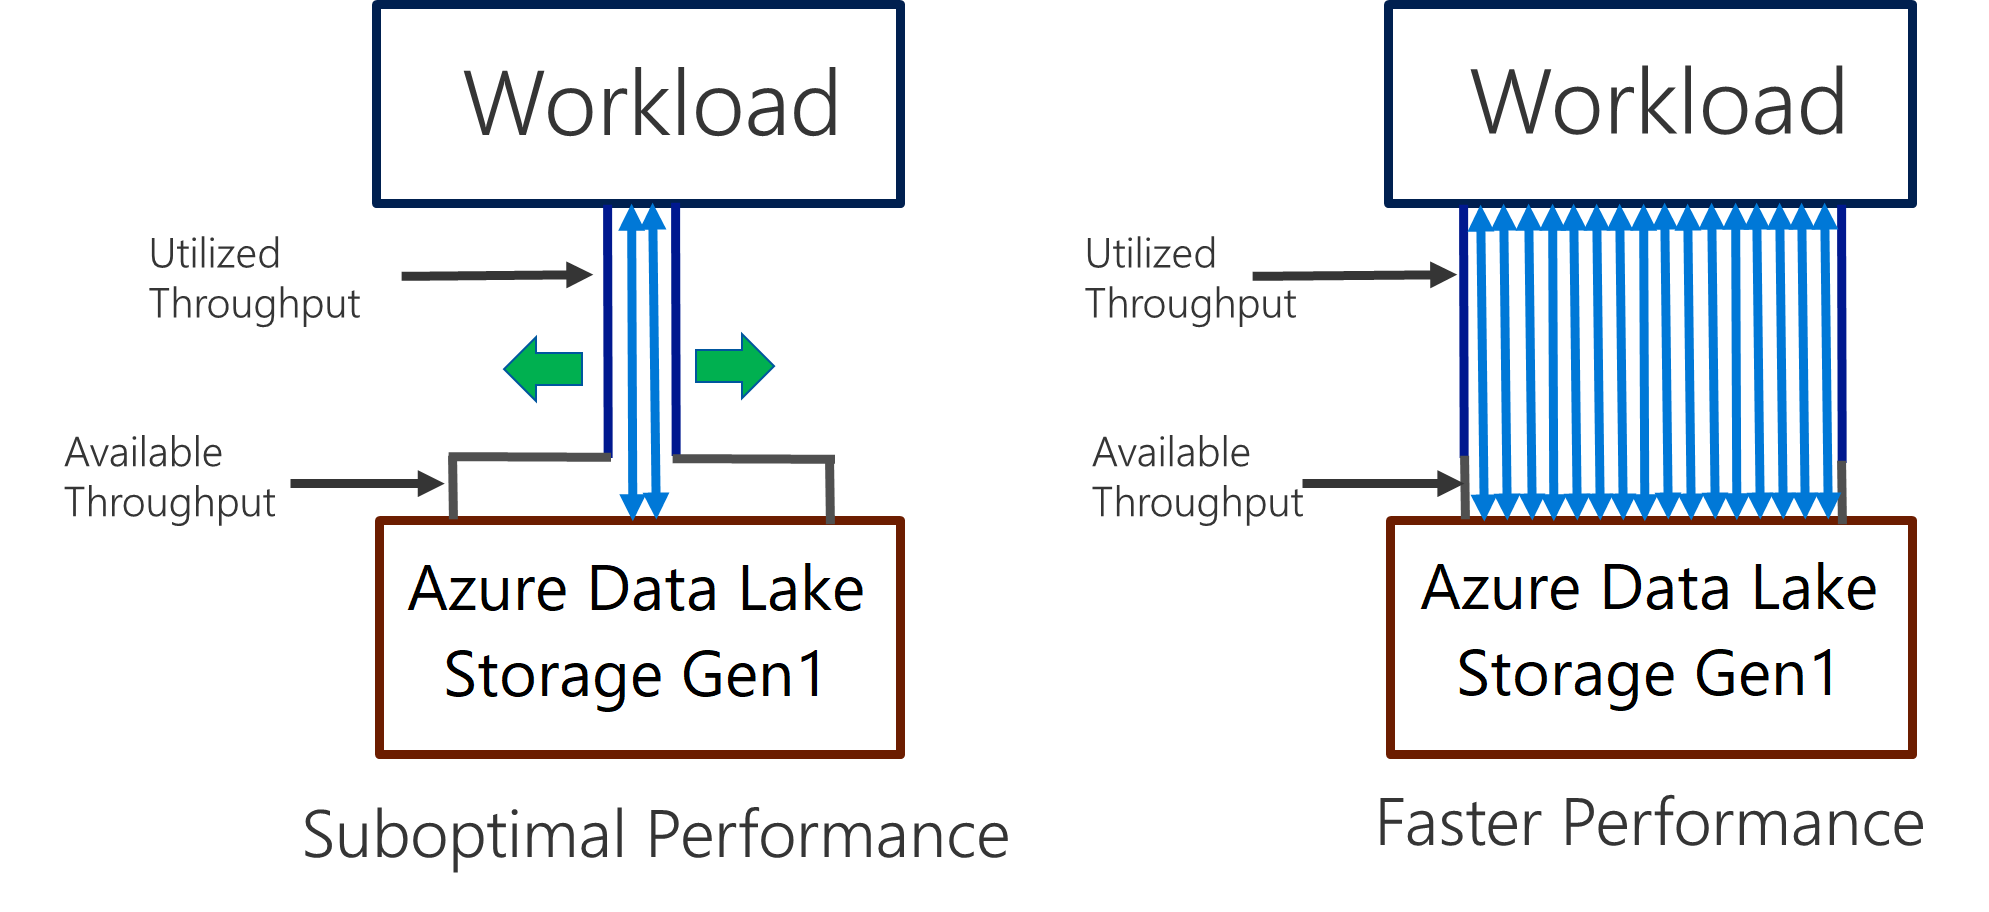 Data Lake Storage Gen1 prestaties